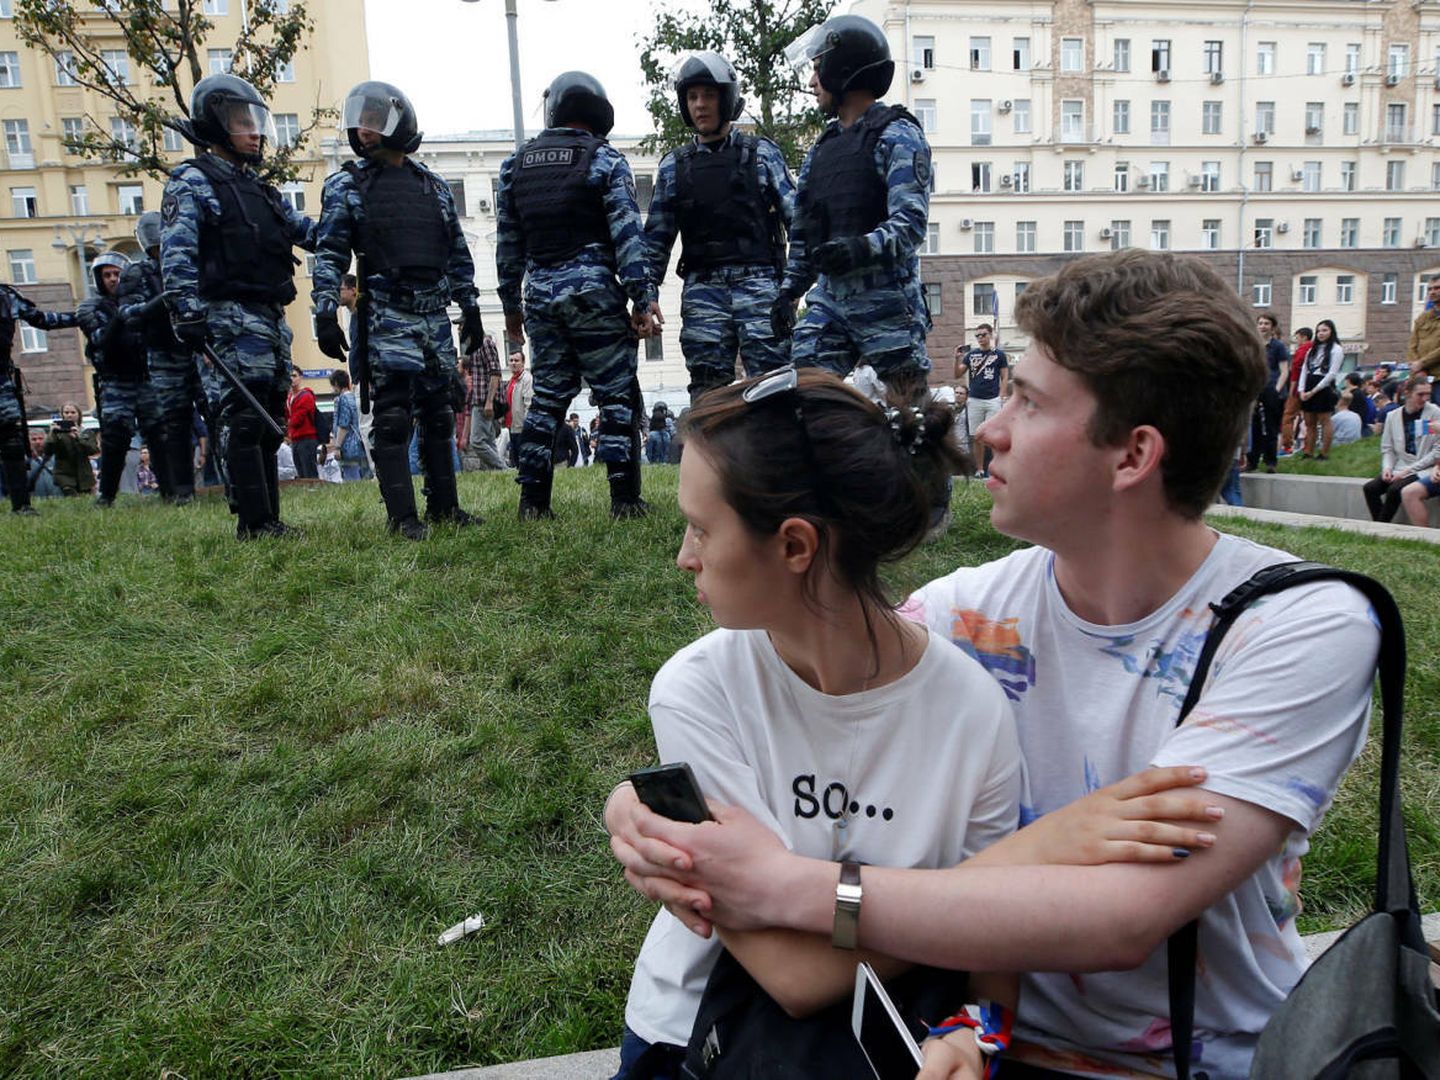 Dos jóvenes miran a unos agentes antidisturbios durante una protesta anticorrupción en Moscú, el 12 de junio de 2017. (Reuters)